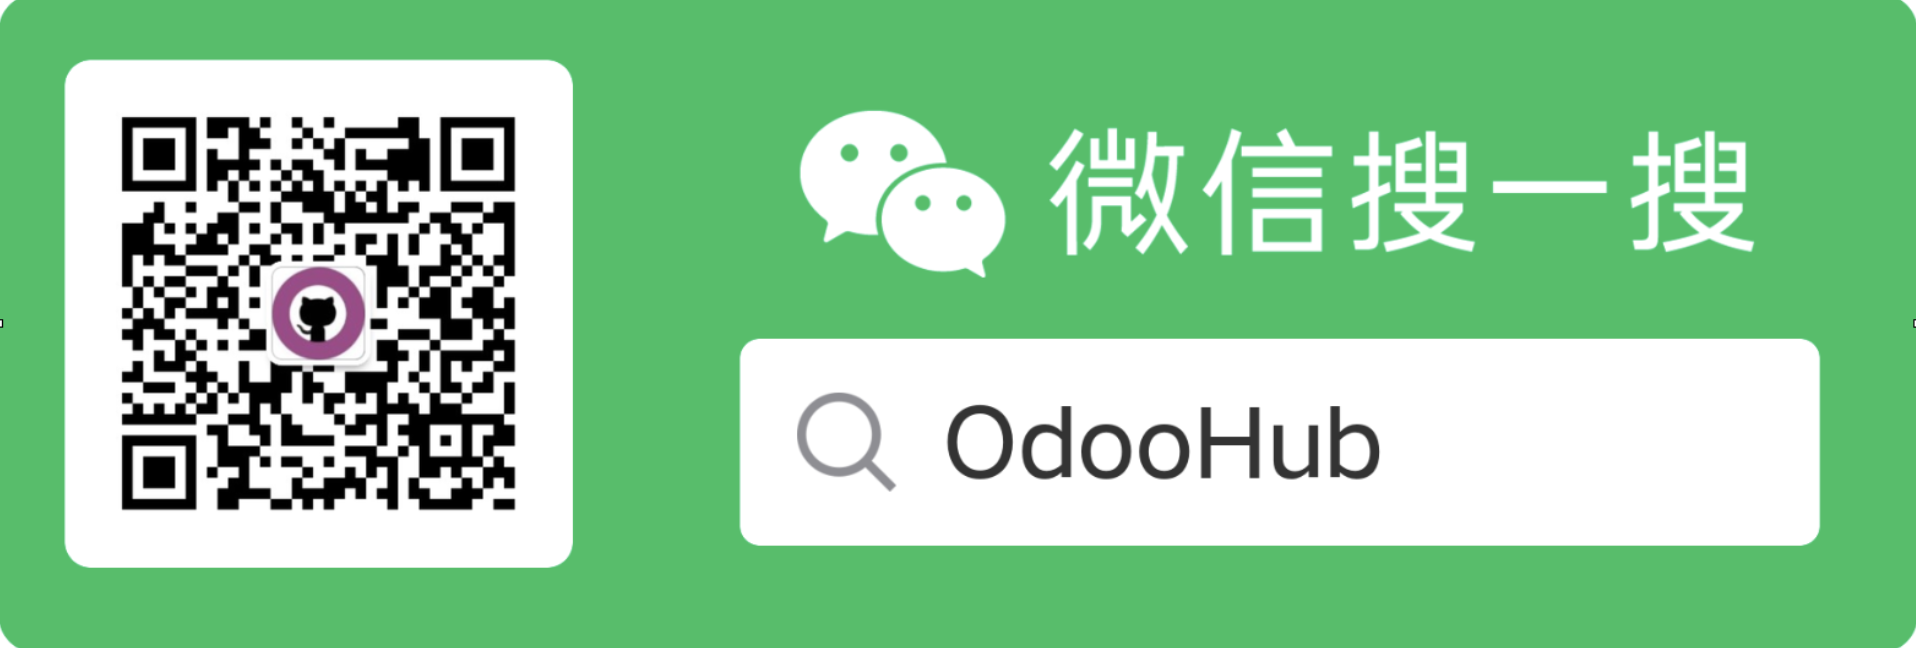 OdooHub